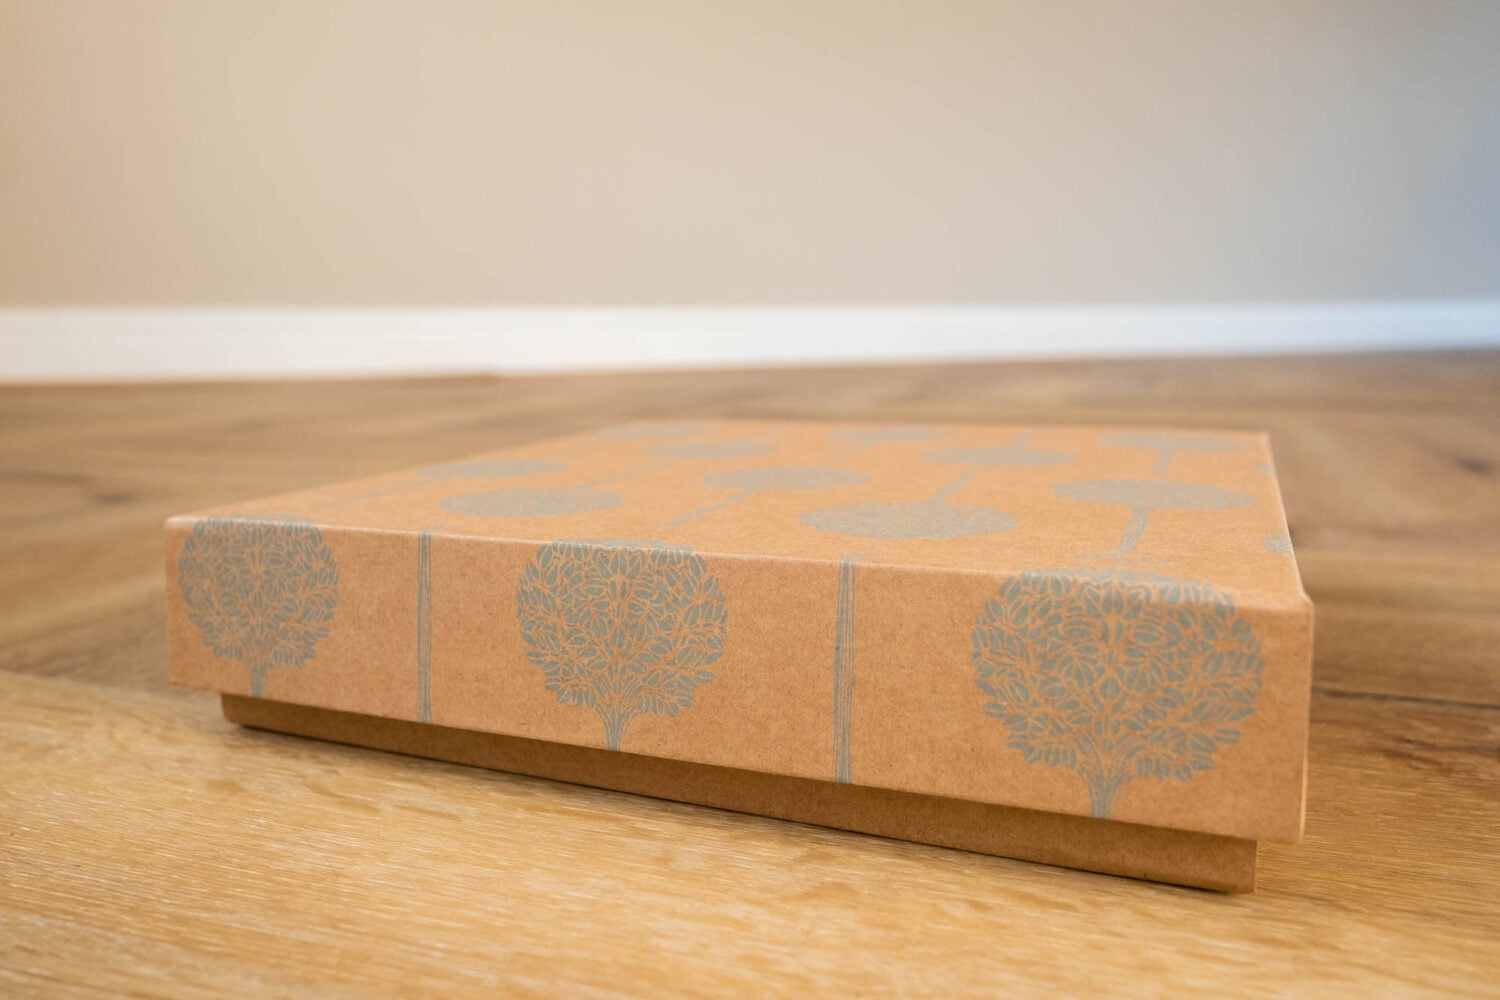 Folio album box packaging with tree design